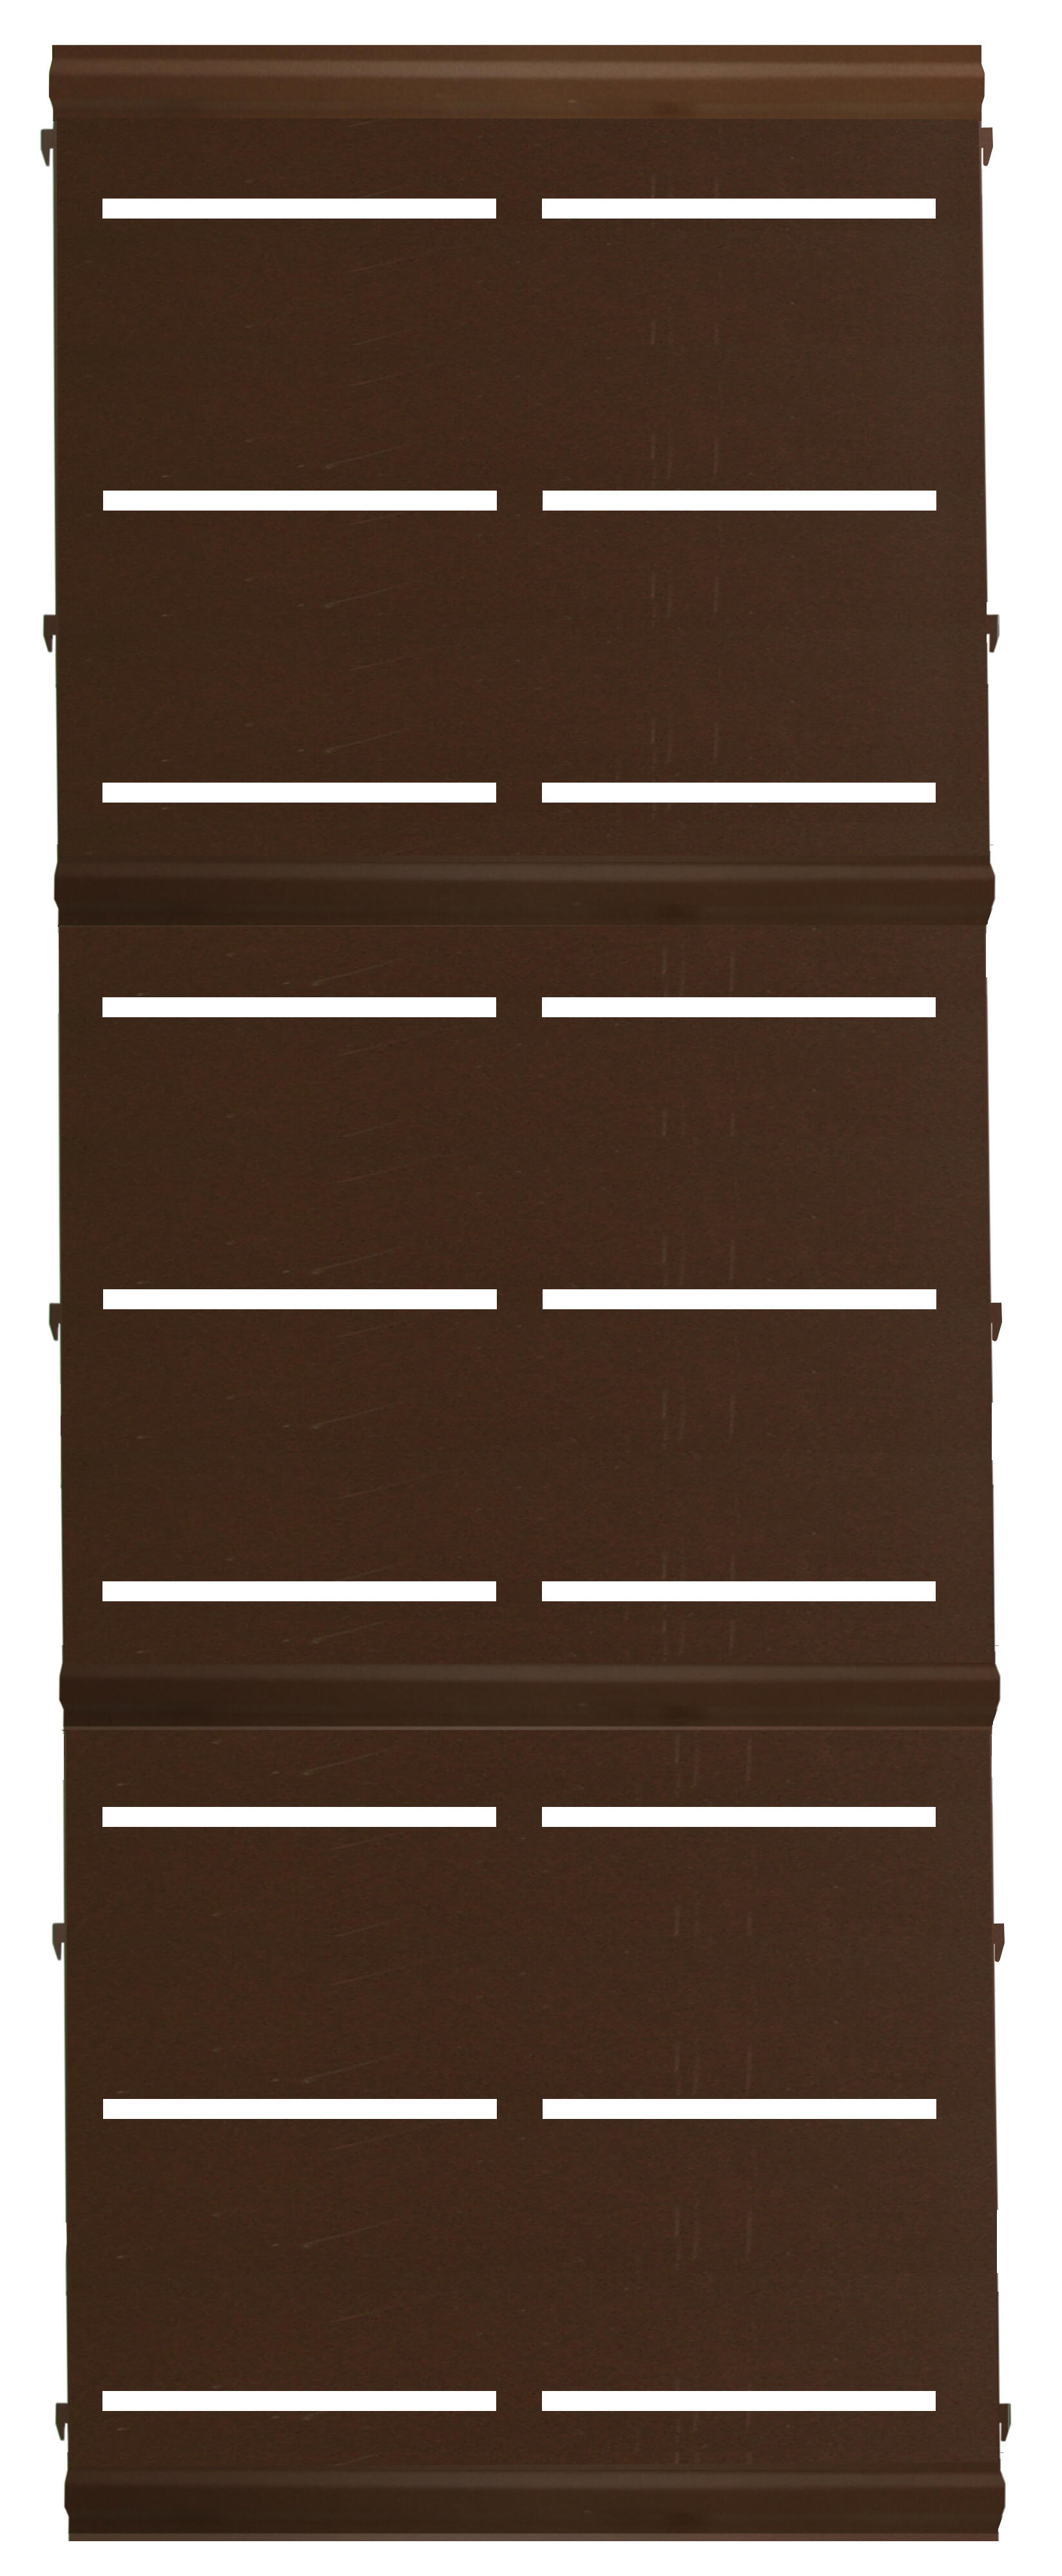 Panel remate valla acero galvanizado franja rayas marrón 194x73,5 cm